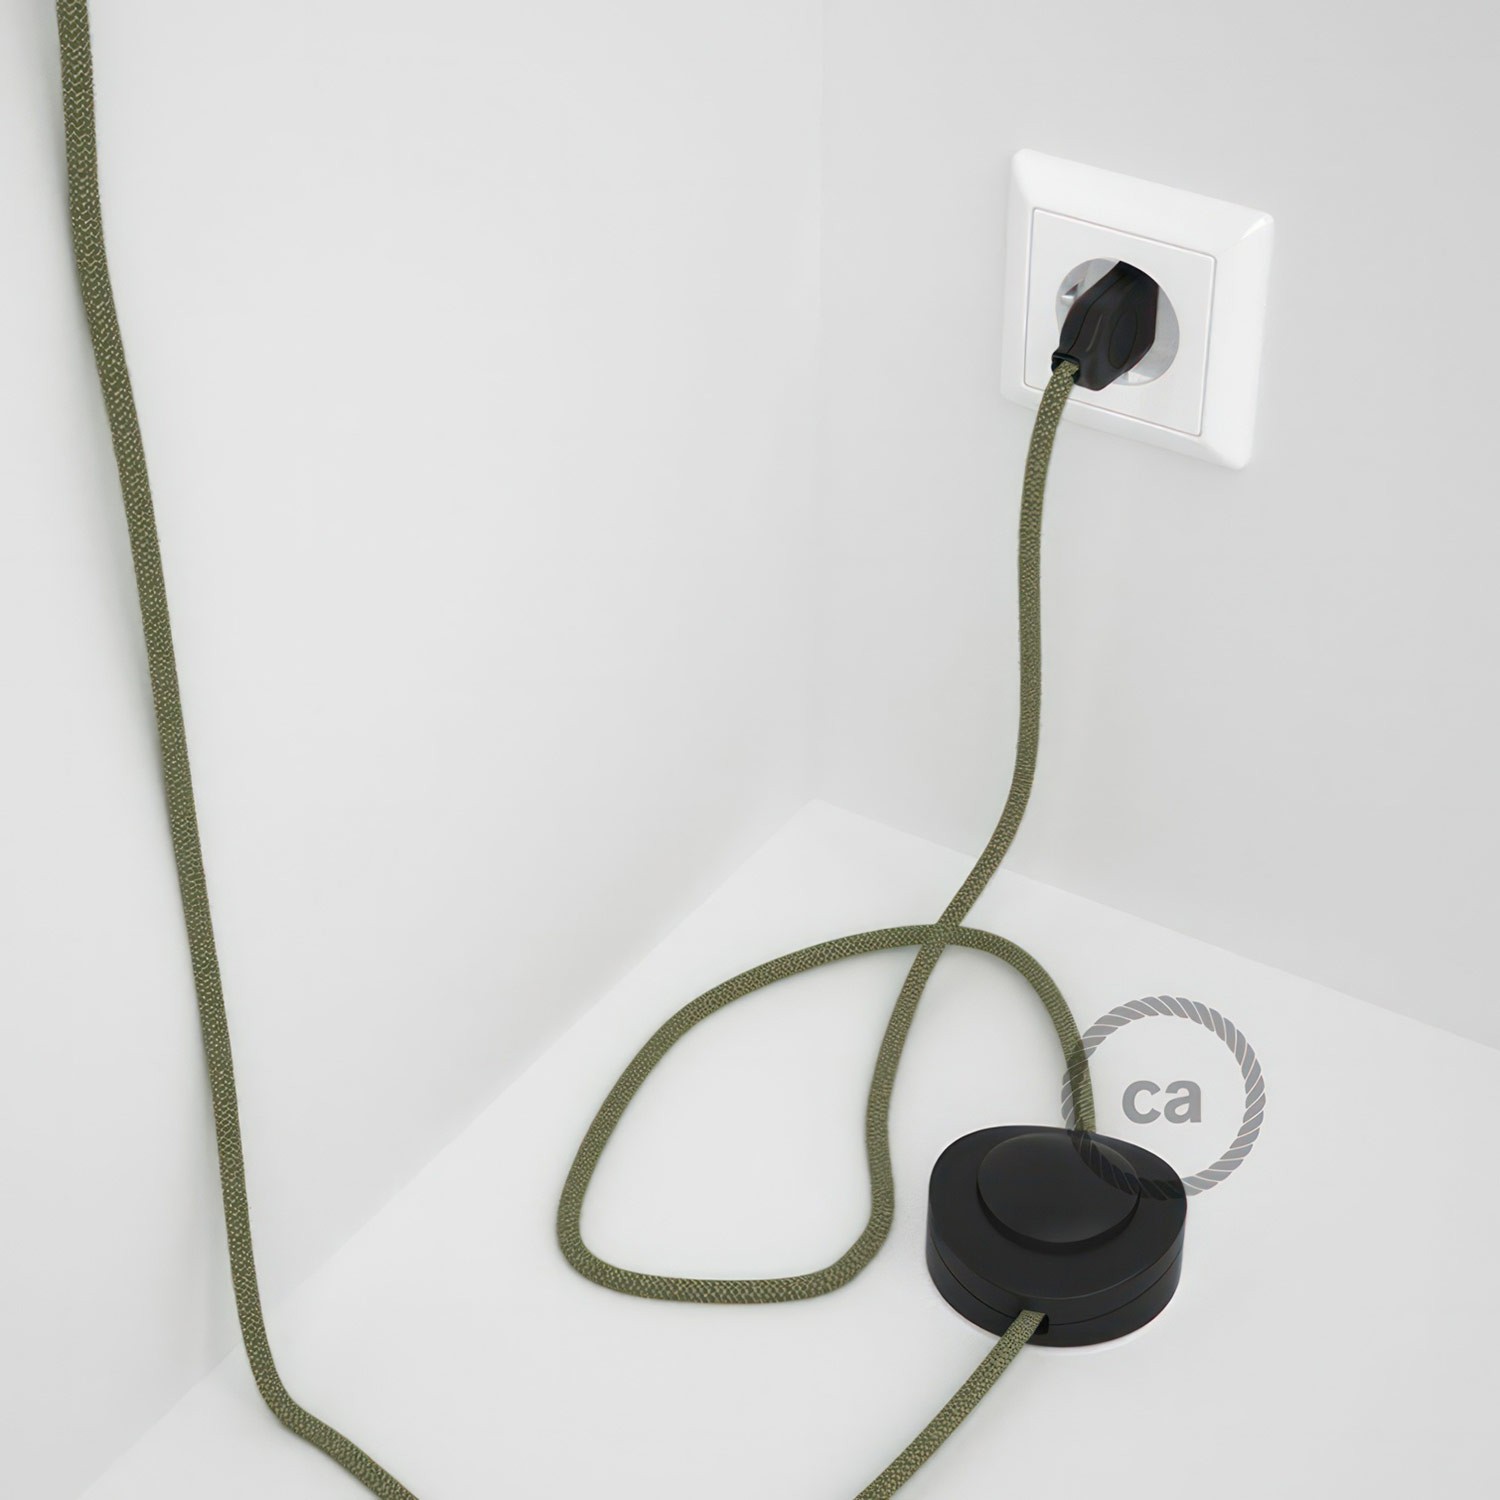 Cableado para lámpara de pie, cable RD72 ZigZag Verde Tomillo 3 m. Elige tu el color de la clavija y del interruptor!